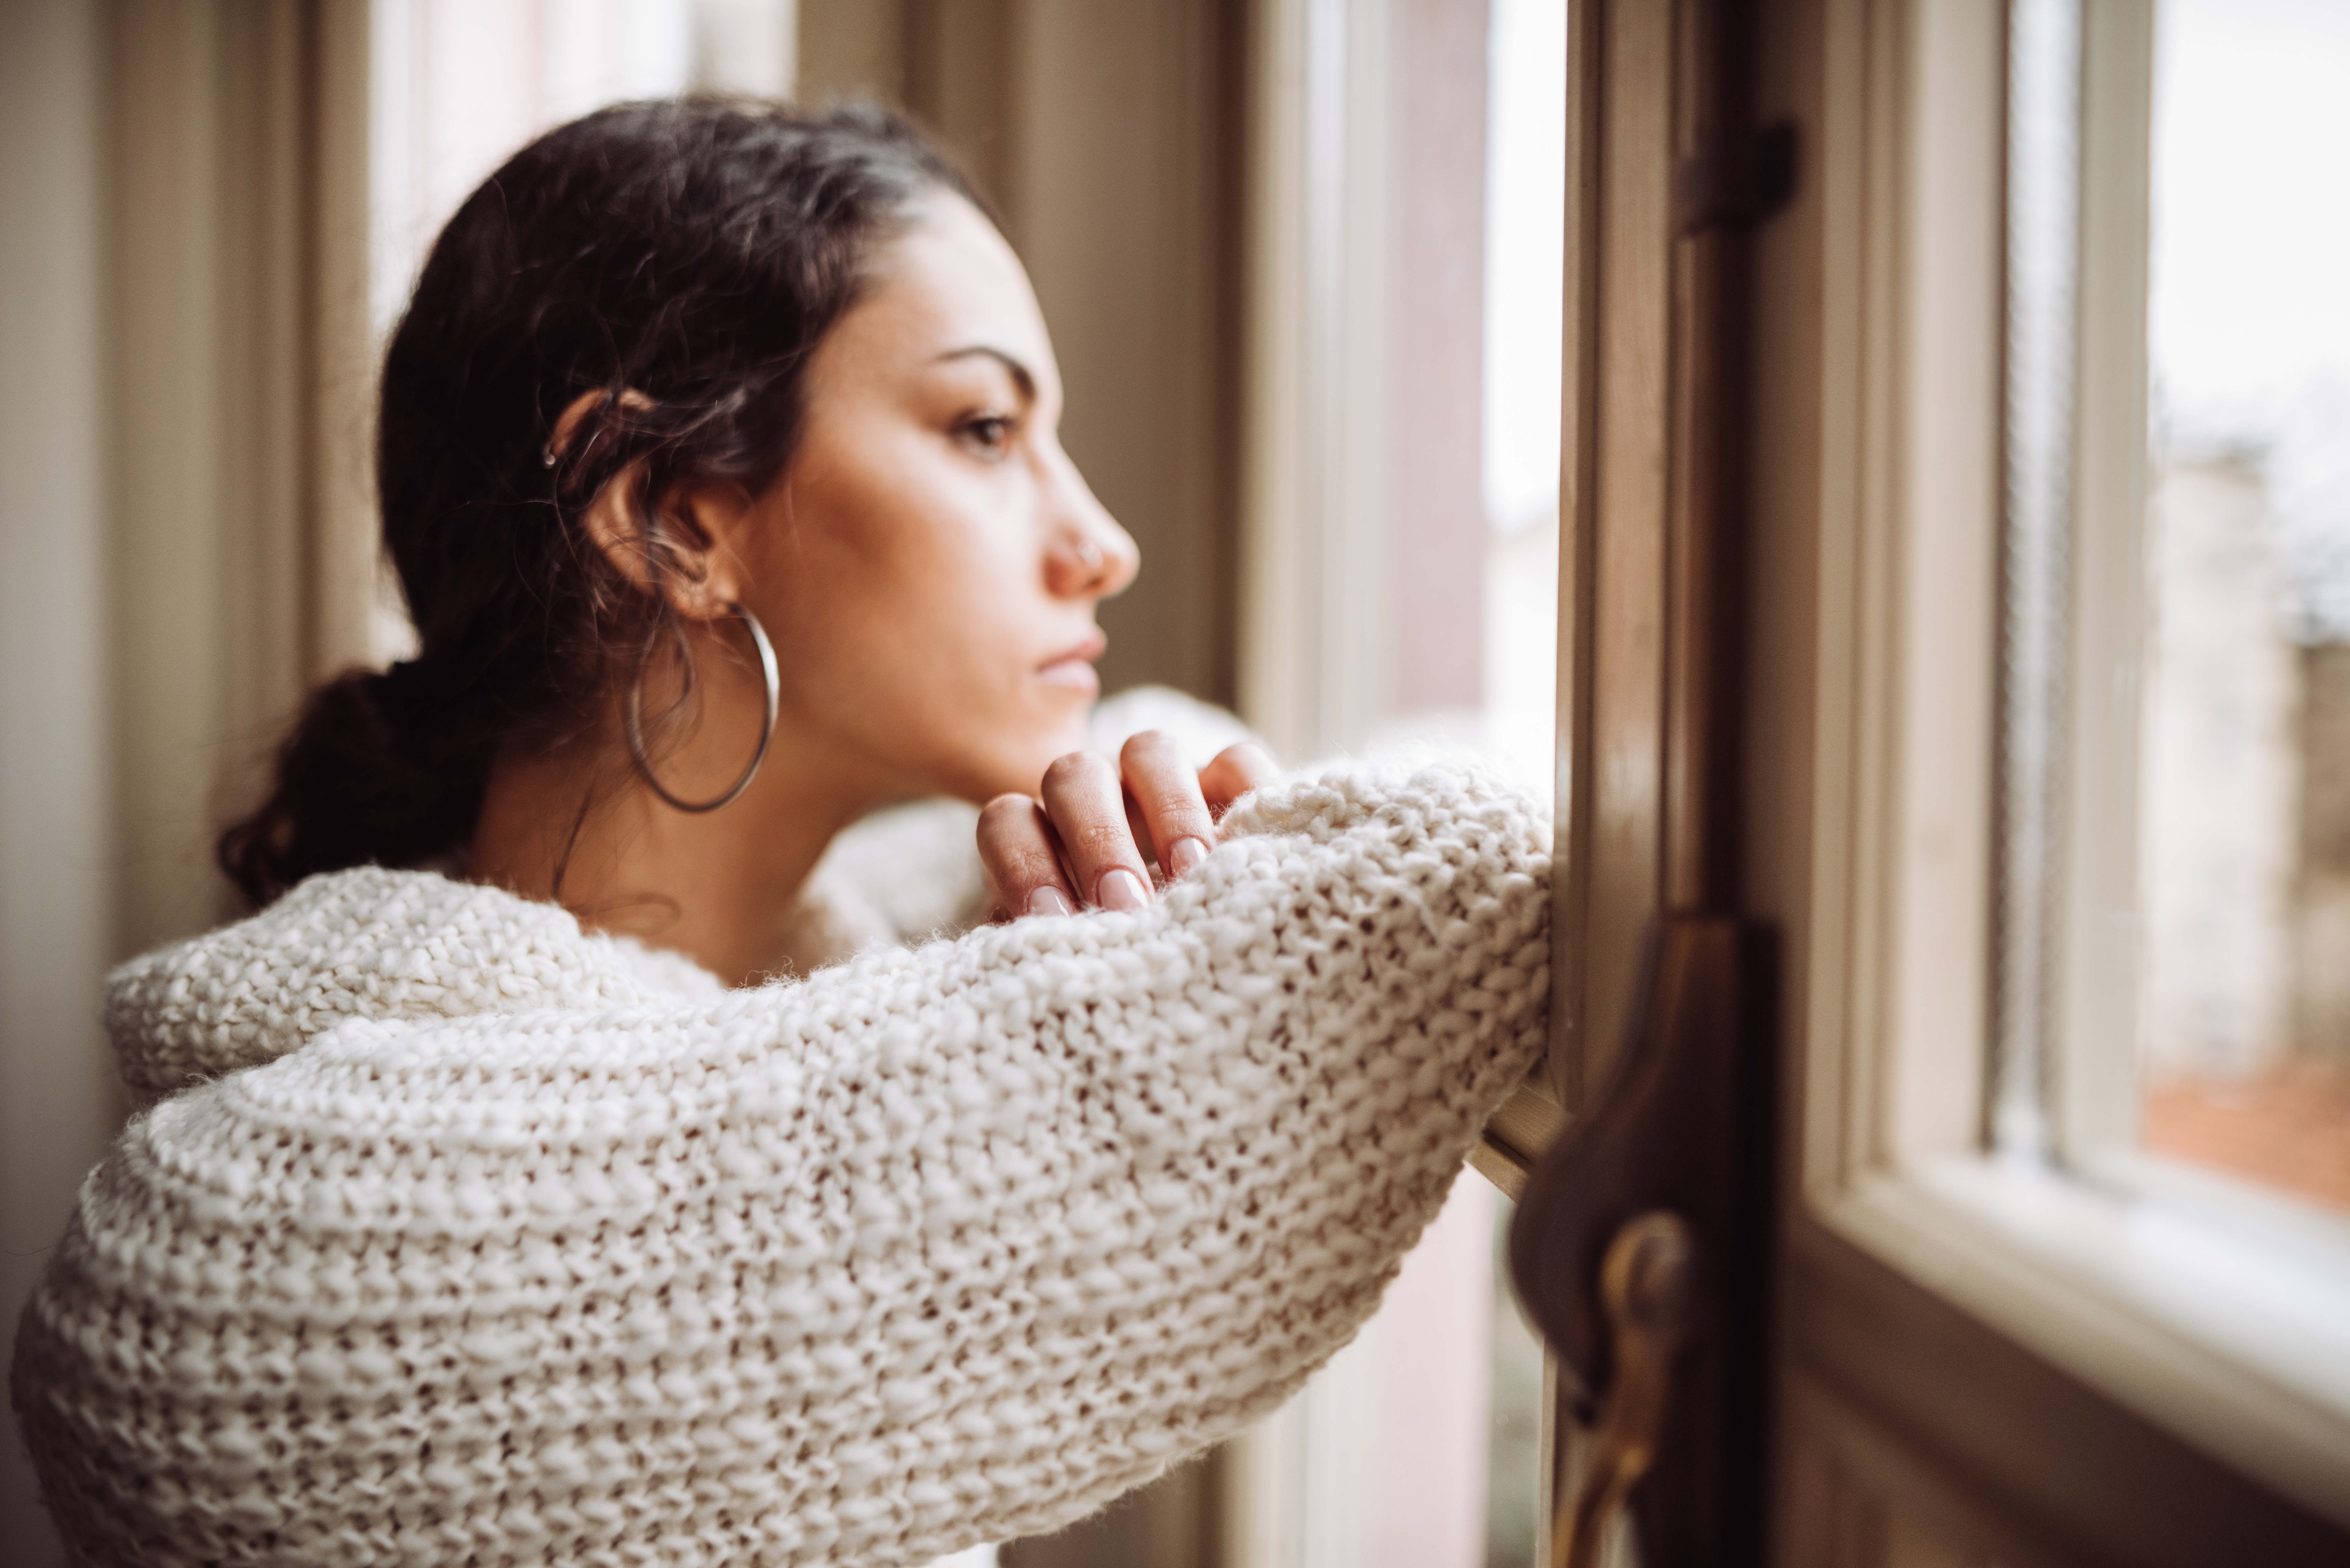 Una mujer pensativa frente a la ventana | Fuente: Getty Images